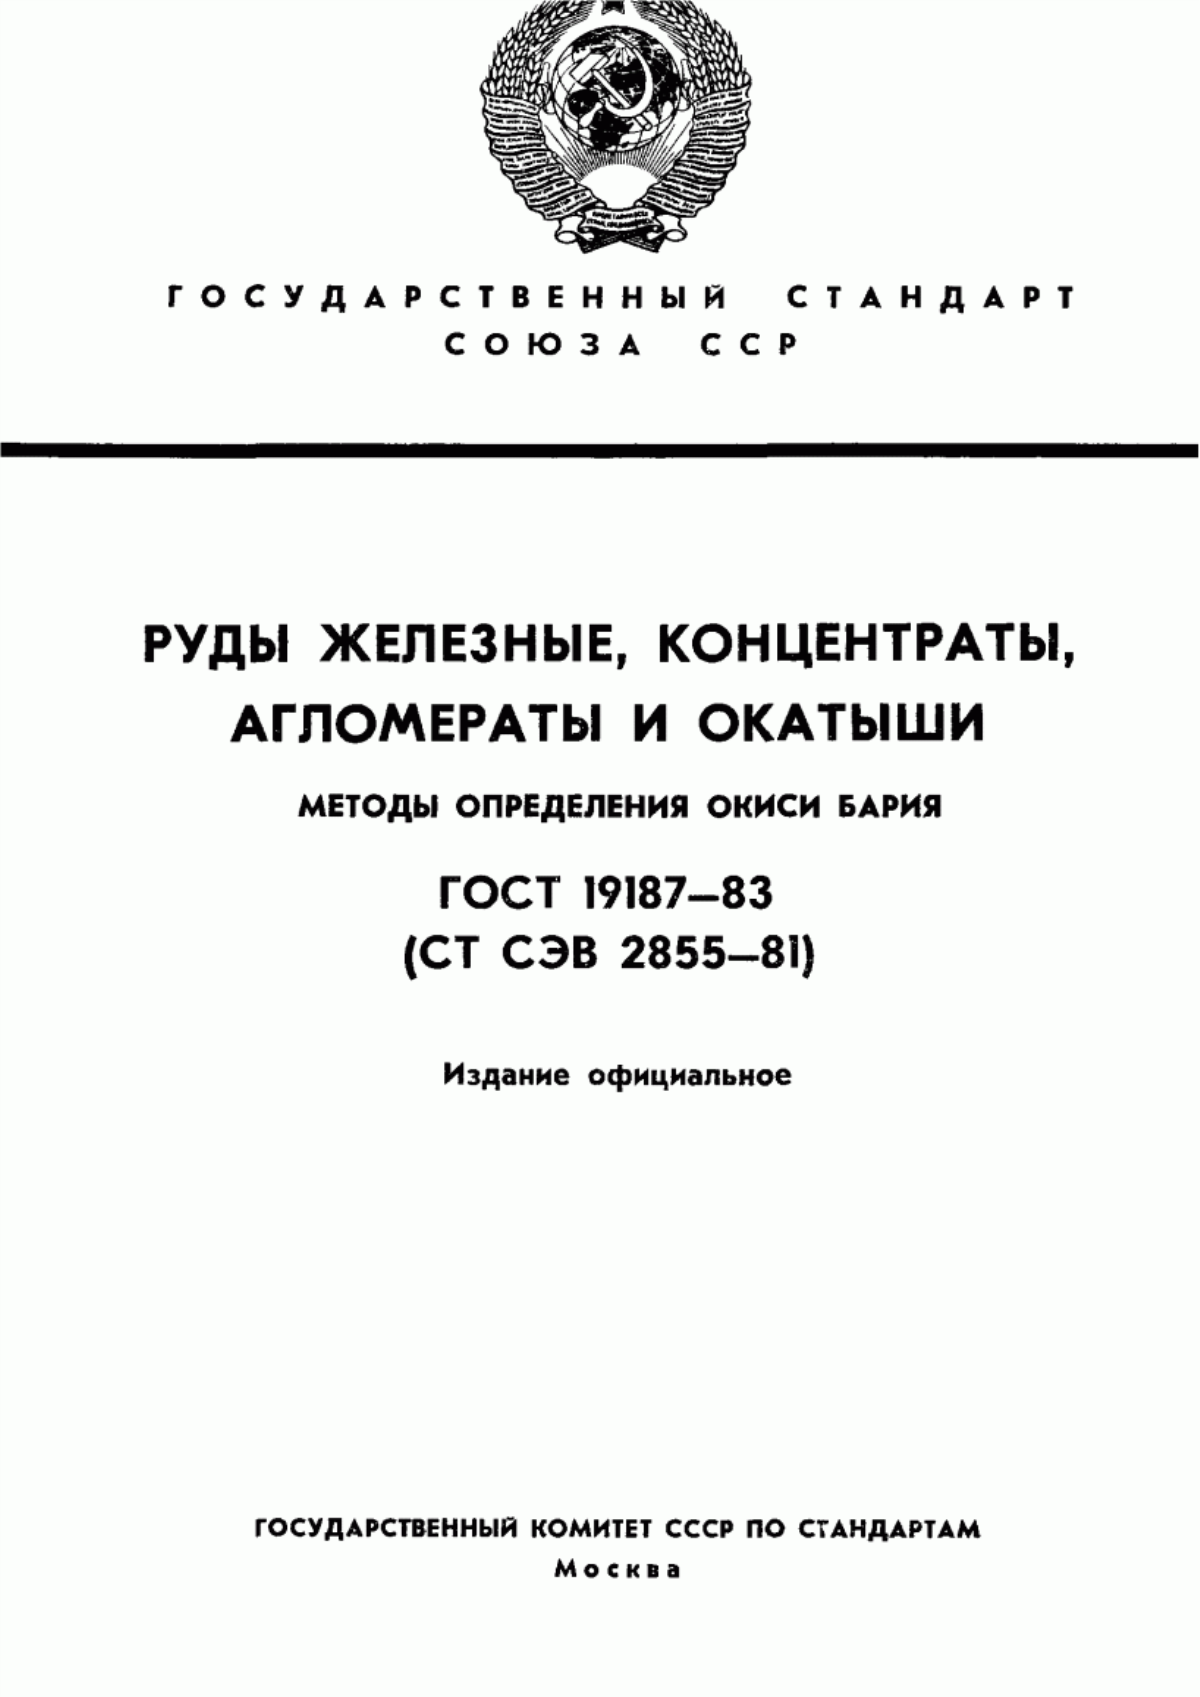 ГОСТ 19187-83 Руды железные, концентраты, агломераты и окатыши. Методы определения окиси бария